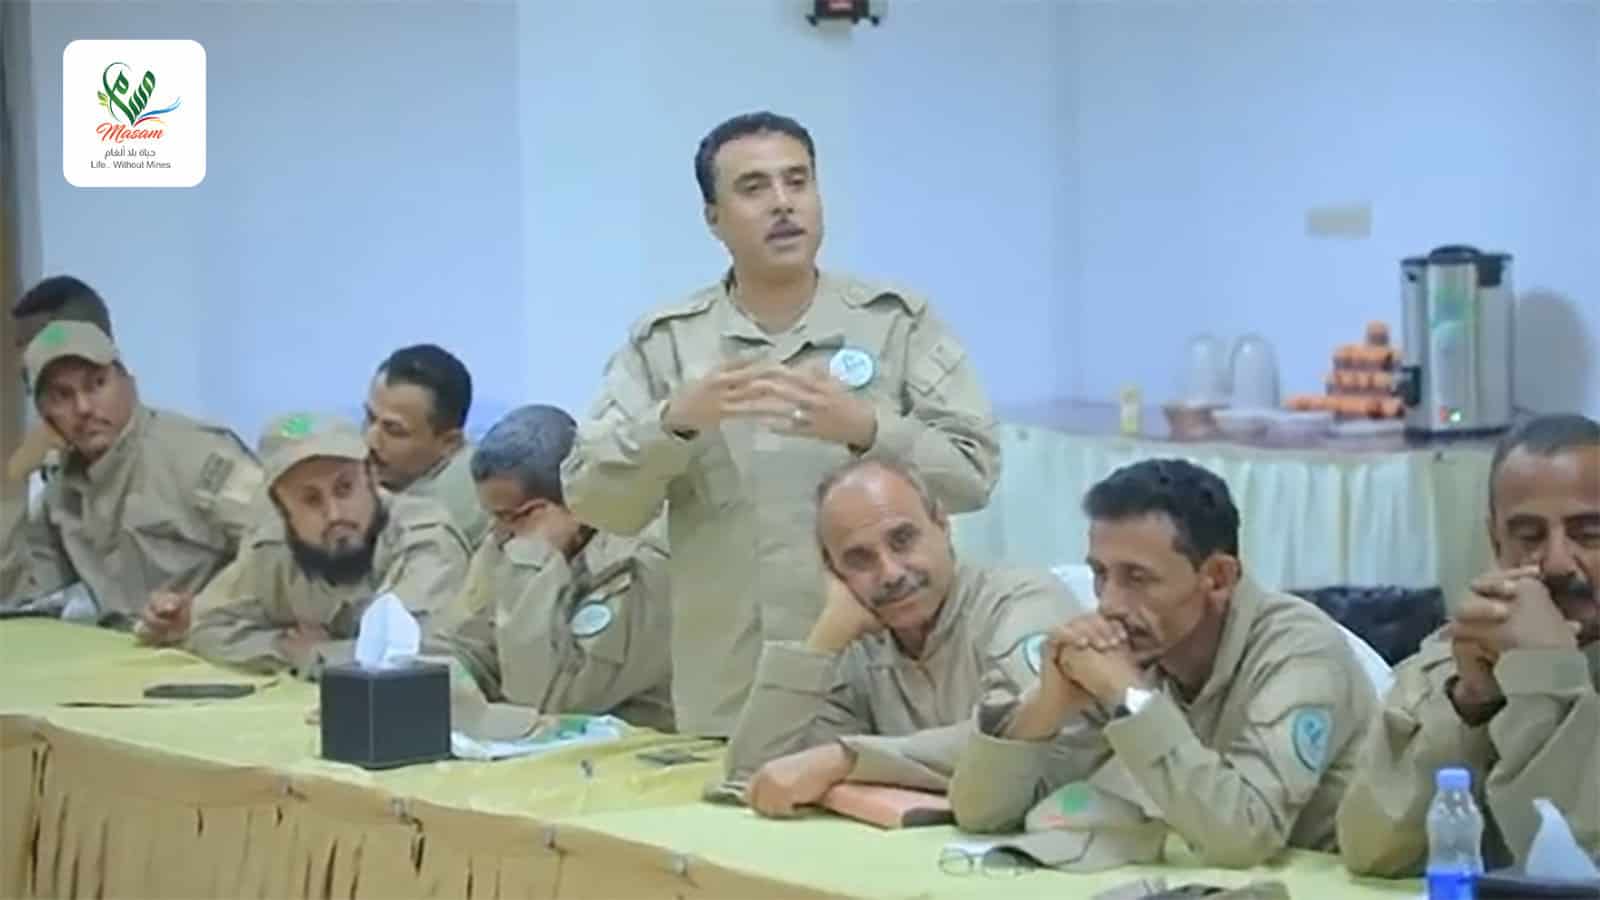 قادة الفرق يبدون تفاعلاً كبيراً مع توصيات خبراء مسام ويؤكدون على مضيهم قدما في رسالة مسام الإنسانية في اليمن